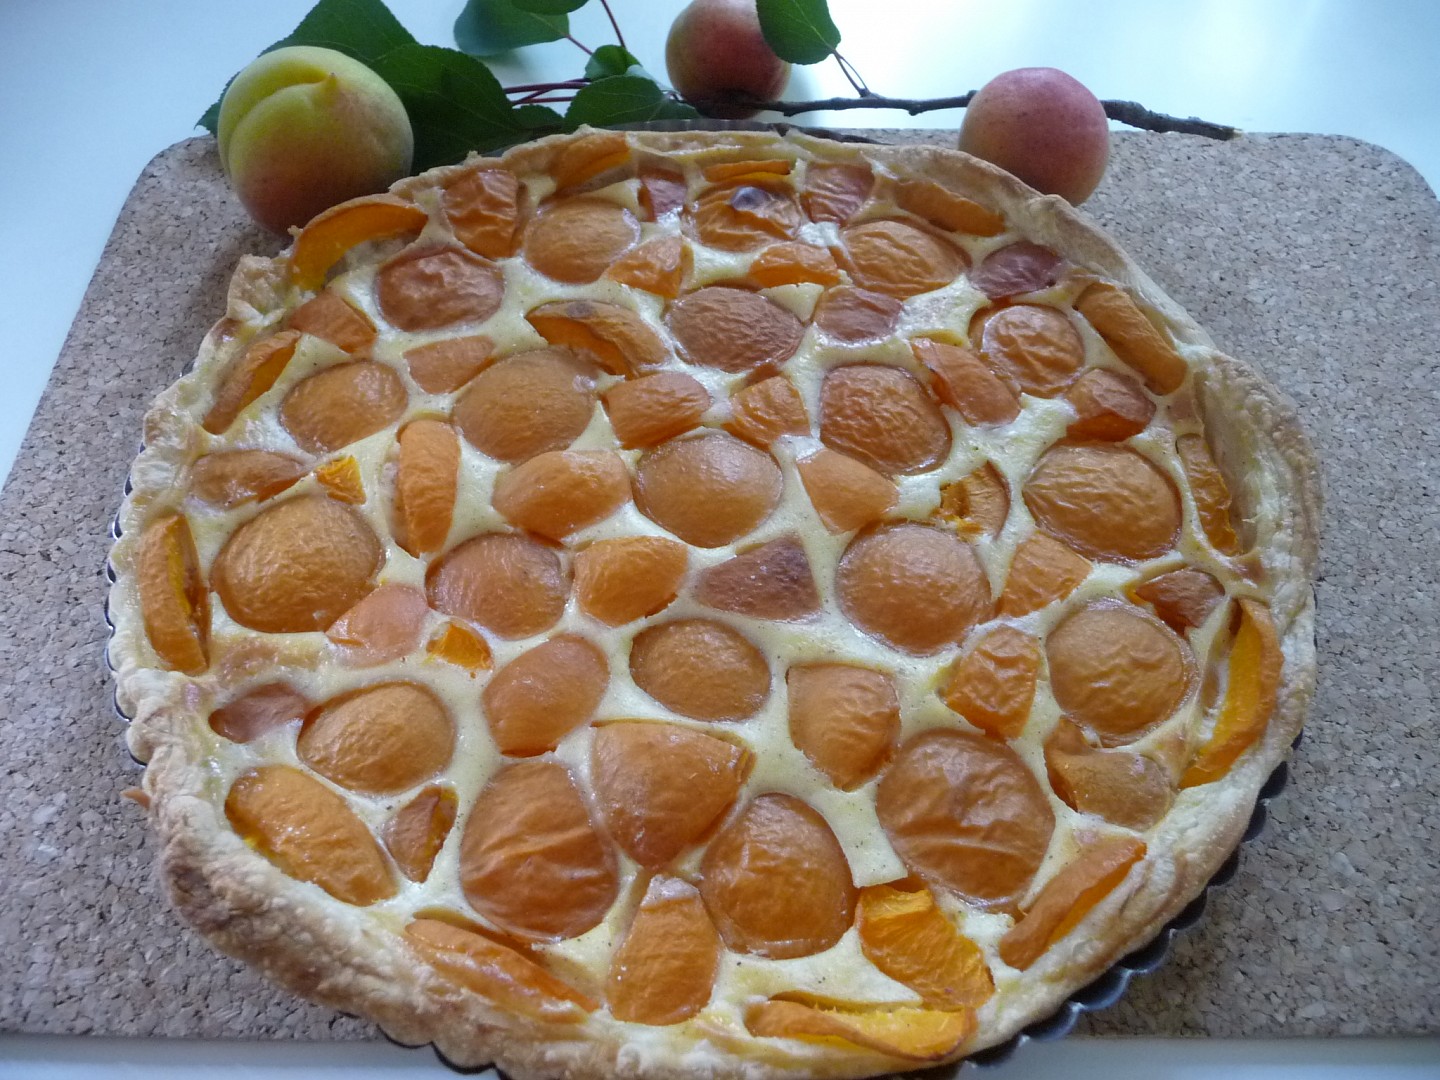 Jednoduchý meruňkový koláč z listového těsta